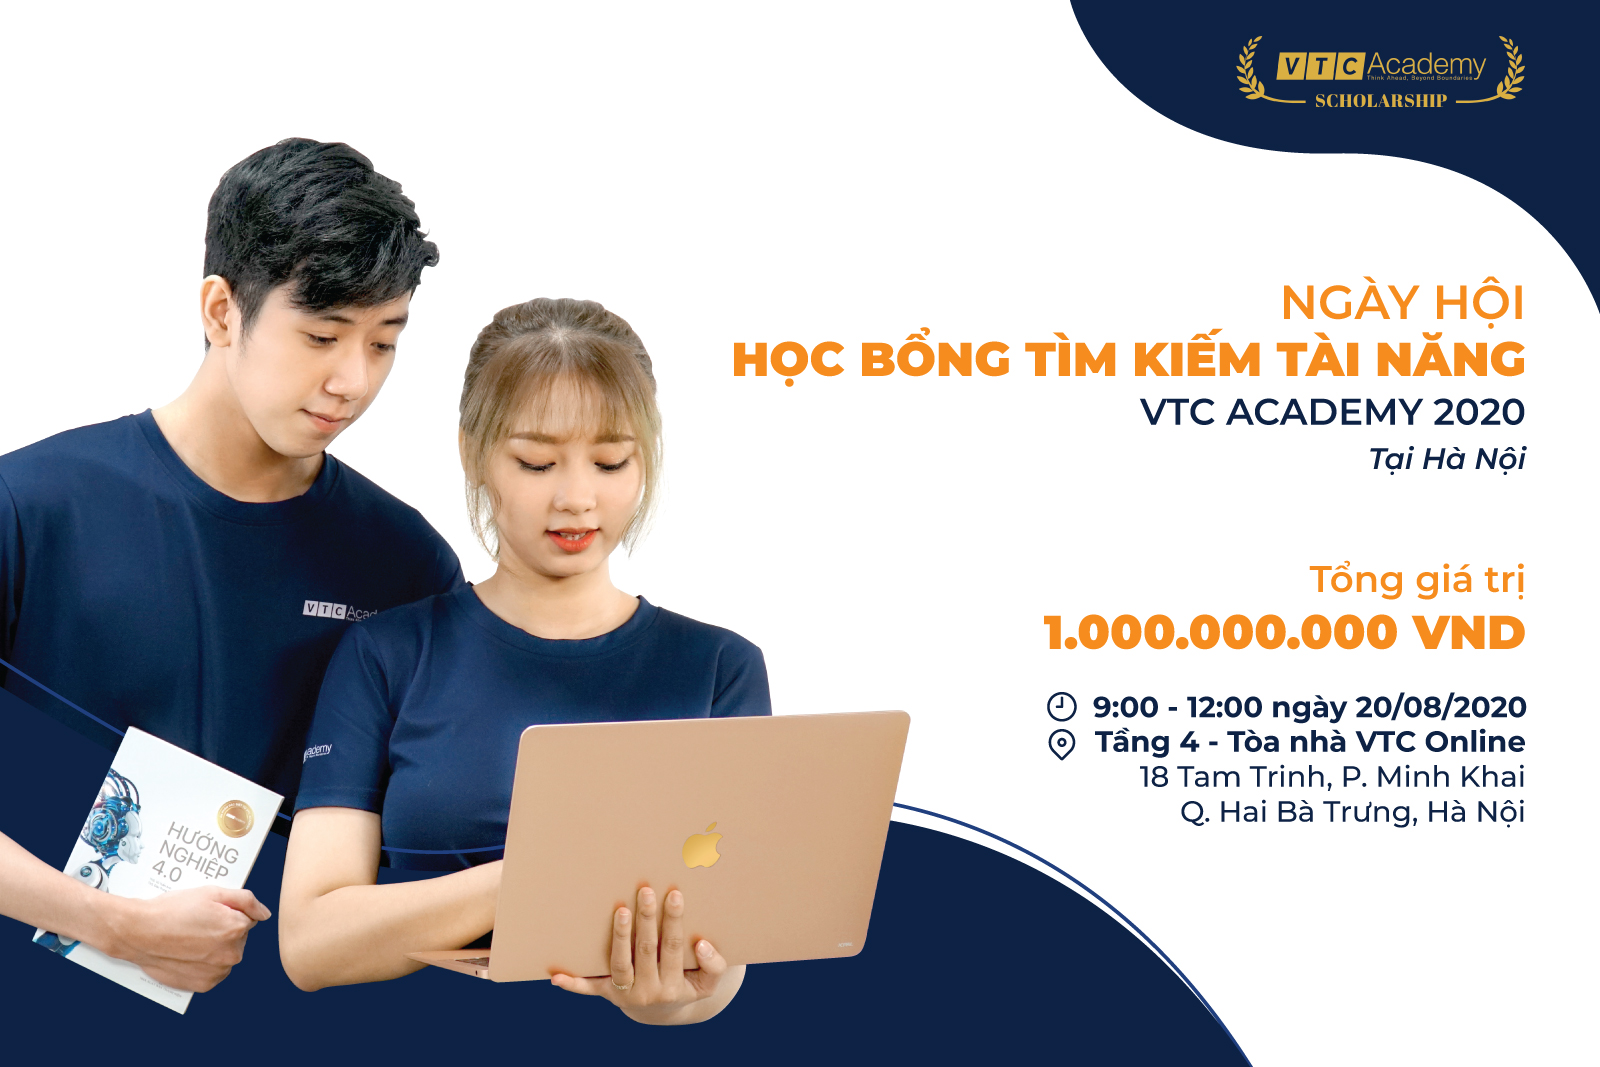 Ngày hội Học bổng Tài năng 2020 lần 2 tại Hà Nội